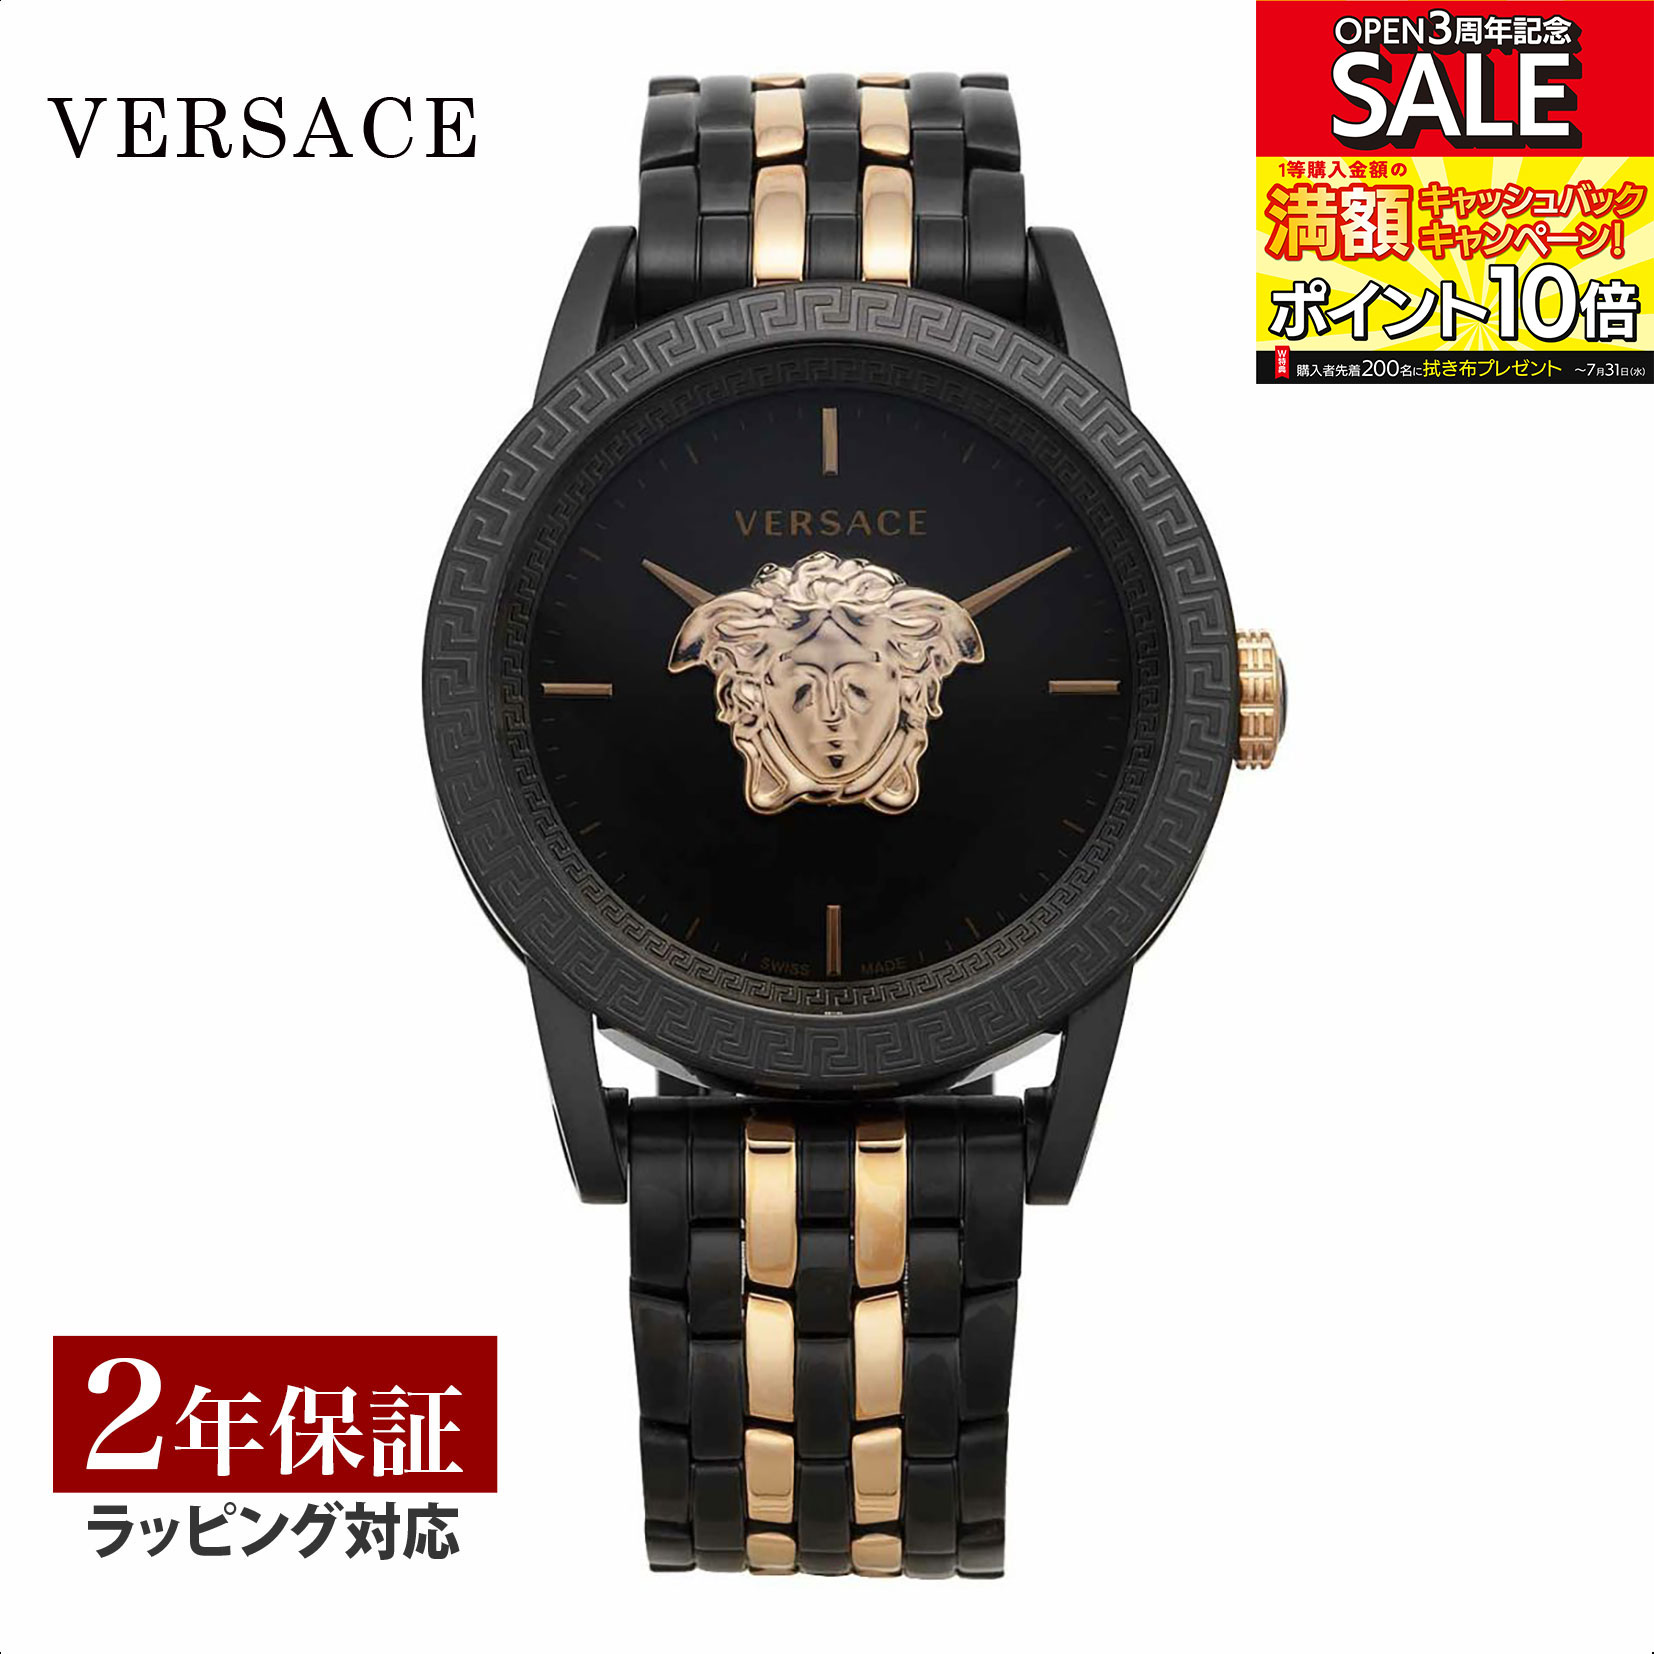 ヴェルサーチェ 腕時計（メンズ） ヴェルサーチェ ヴェルサーチ VERSACE メンズ 時計 PALAZZO クォーツ ブラック VERD01623 時計 腕時計 高級腕時計 ブランド